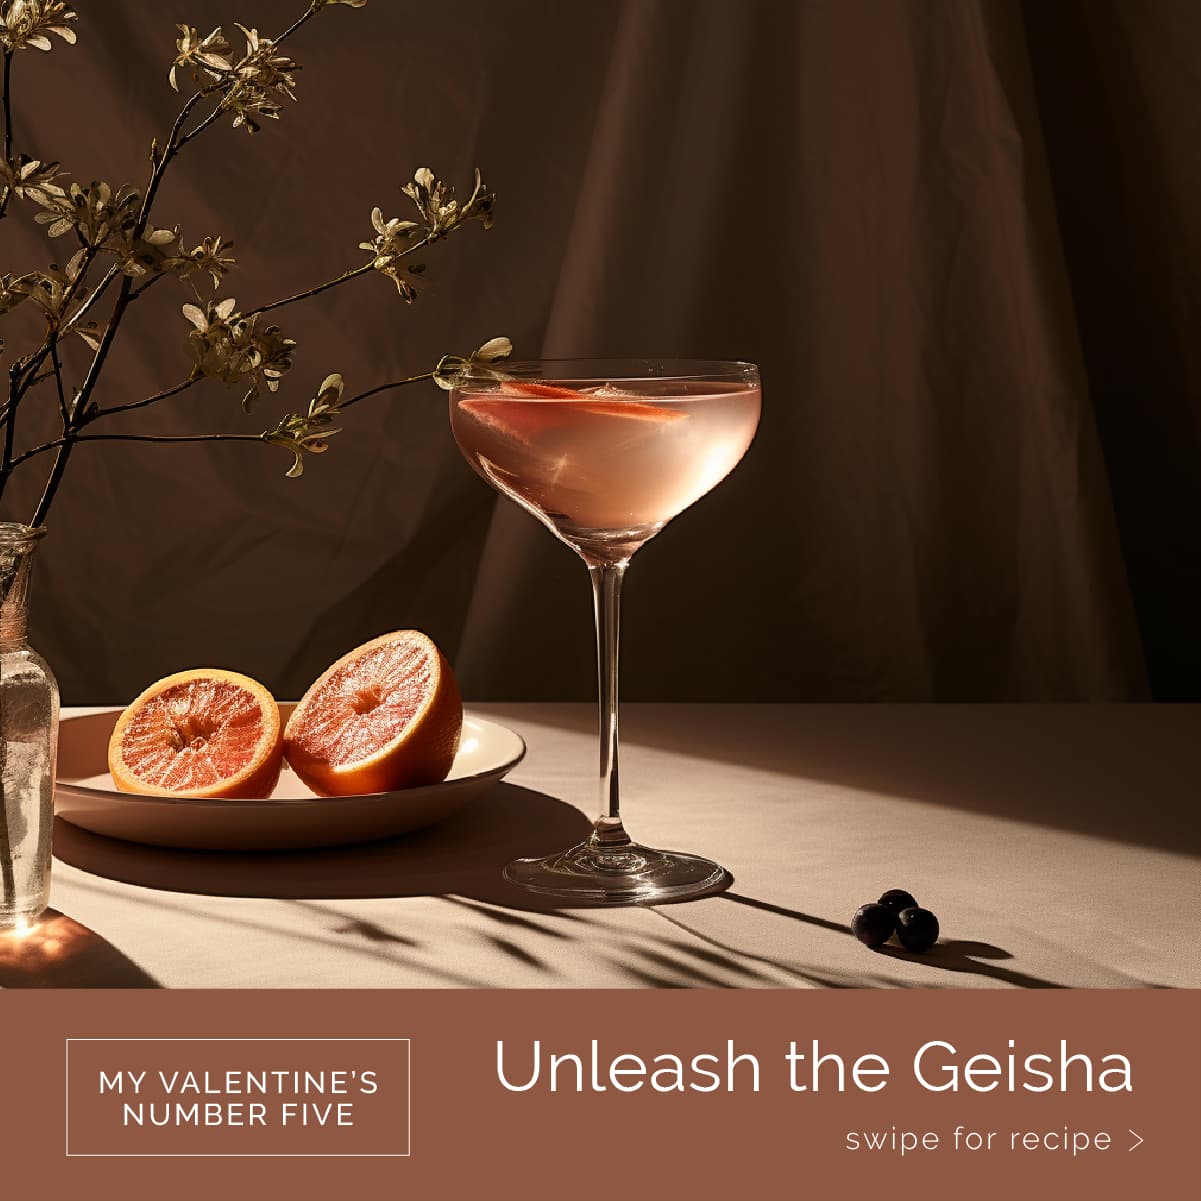 An Unleash the Geisha cocktail